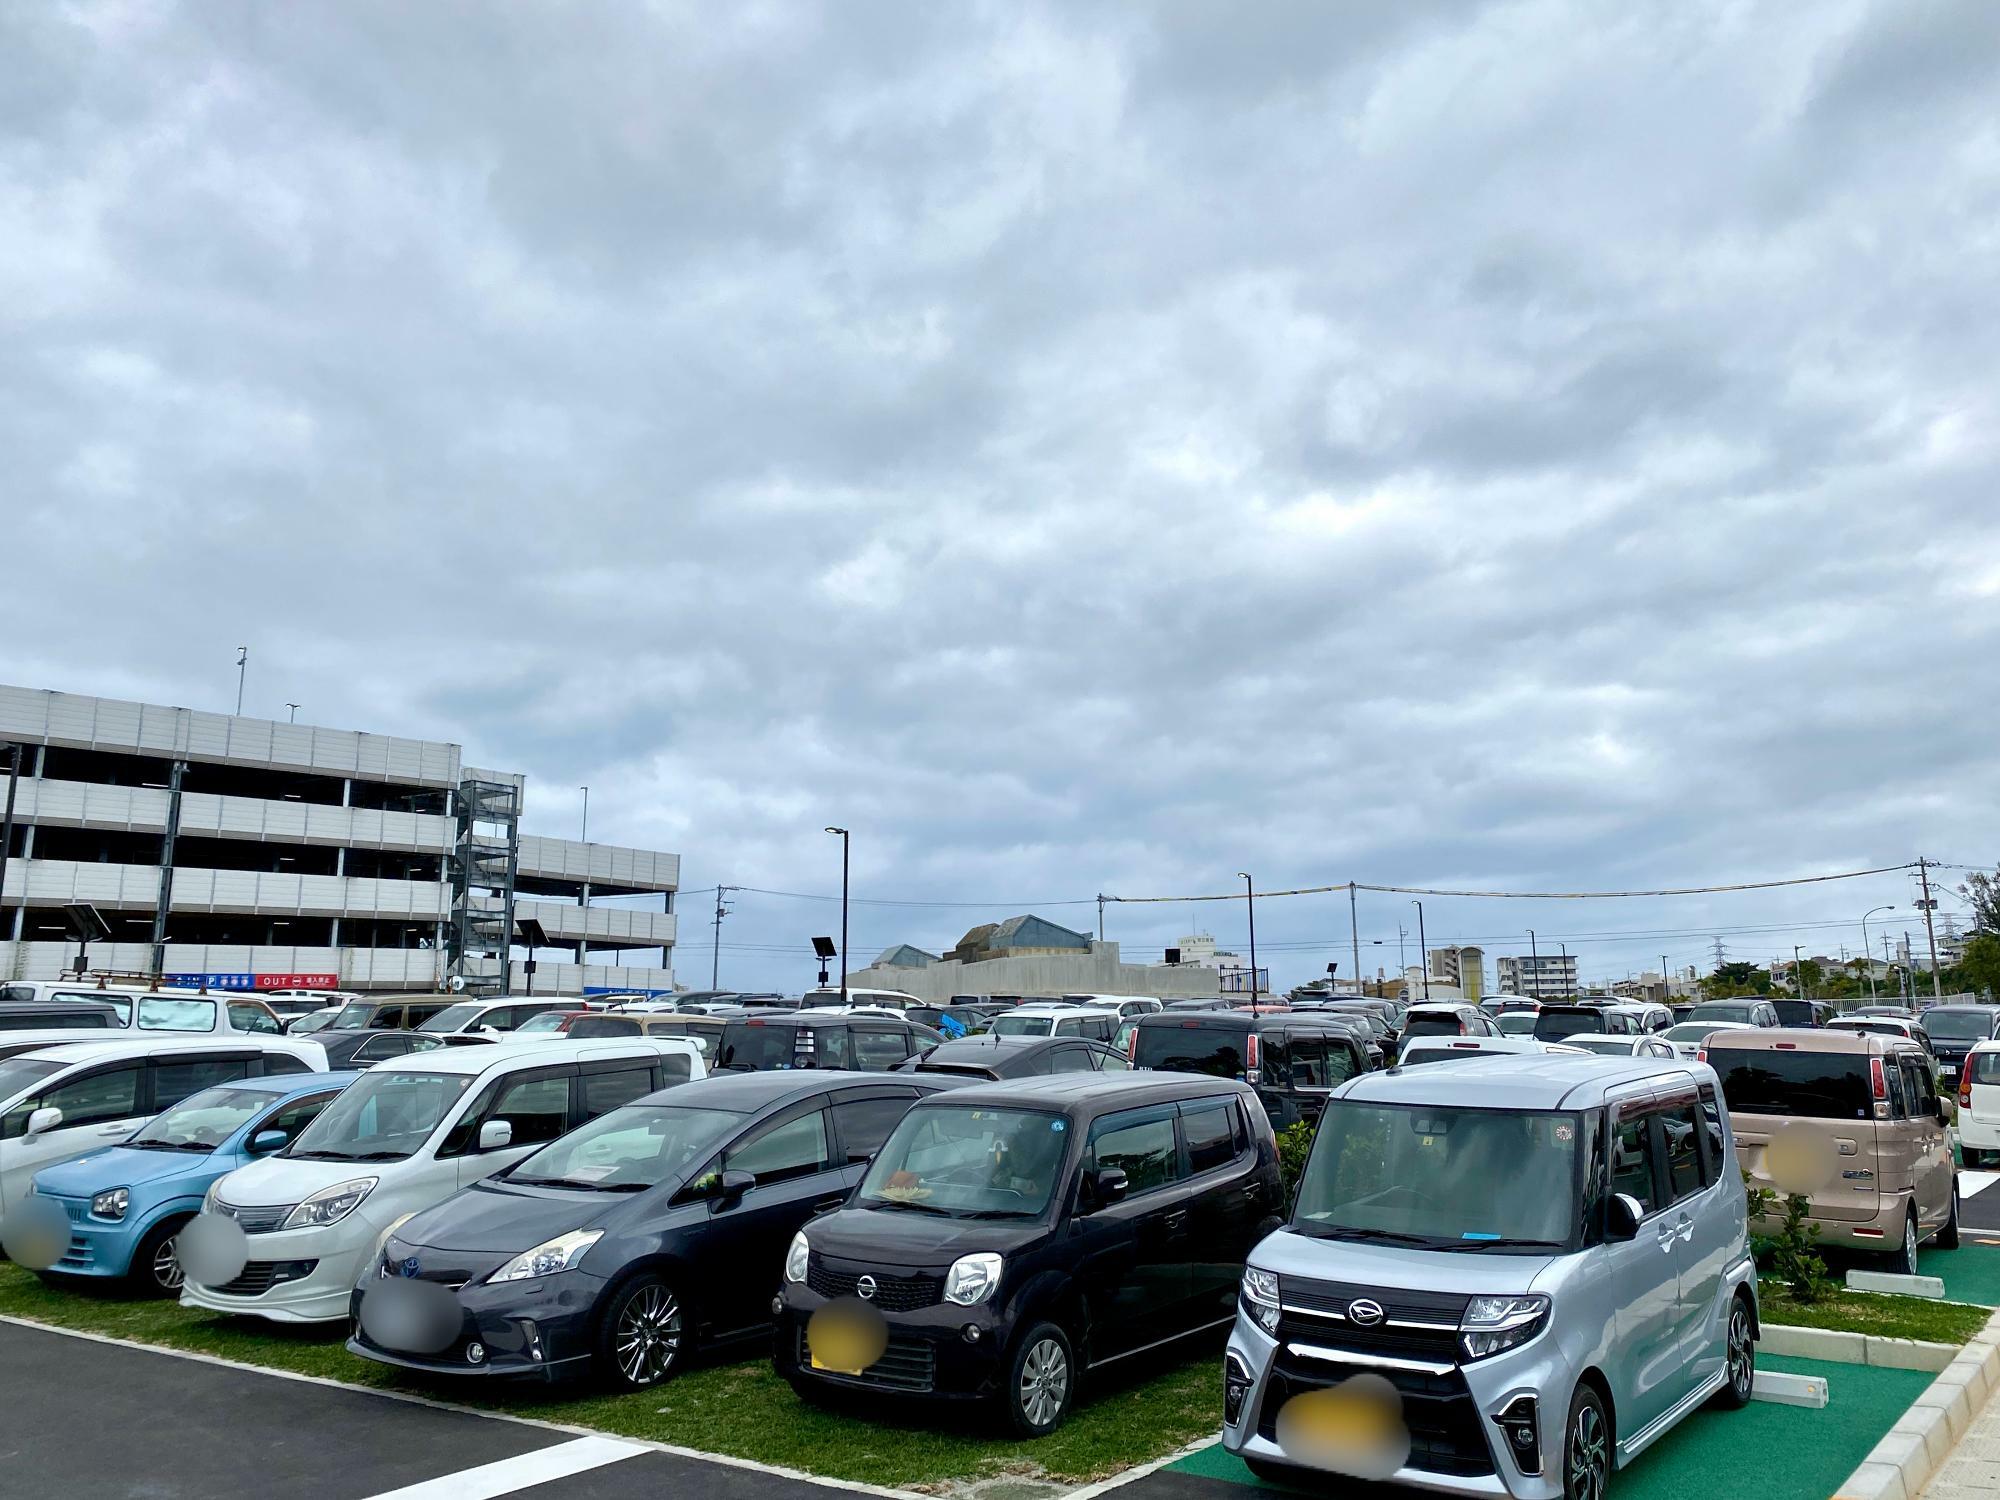 イベント開始1時間後の沖縄アリーナ隣接駐車場の状況